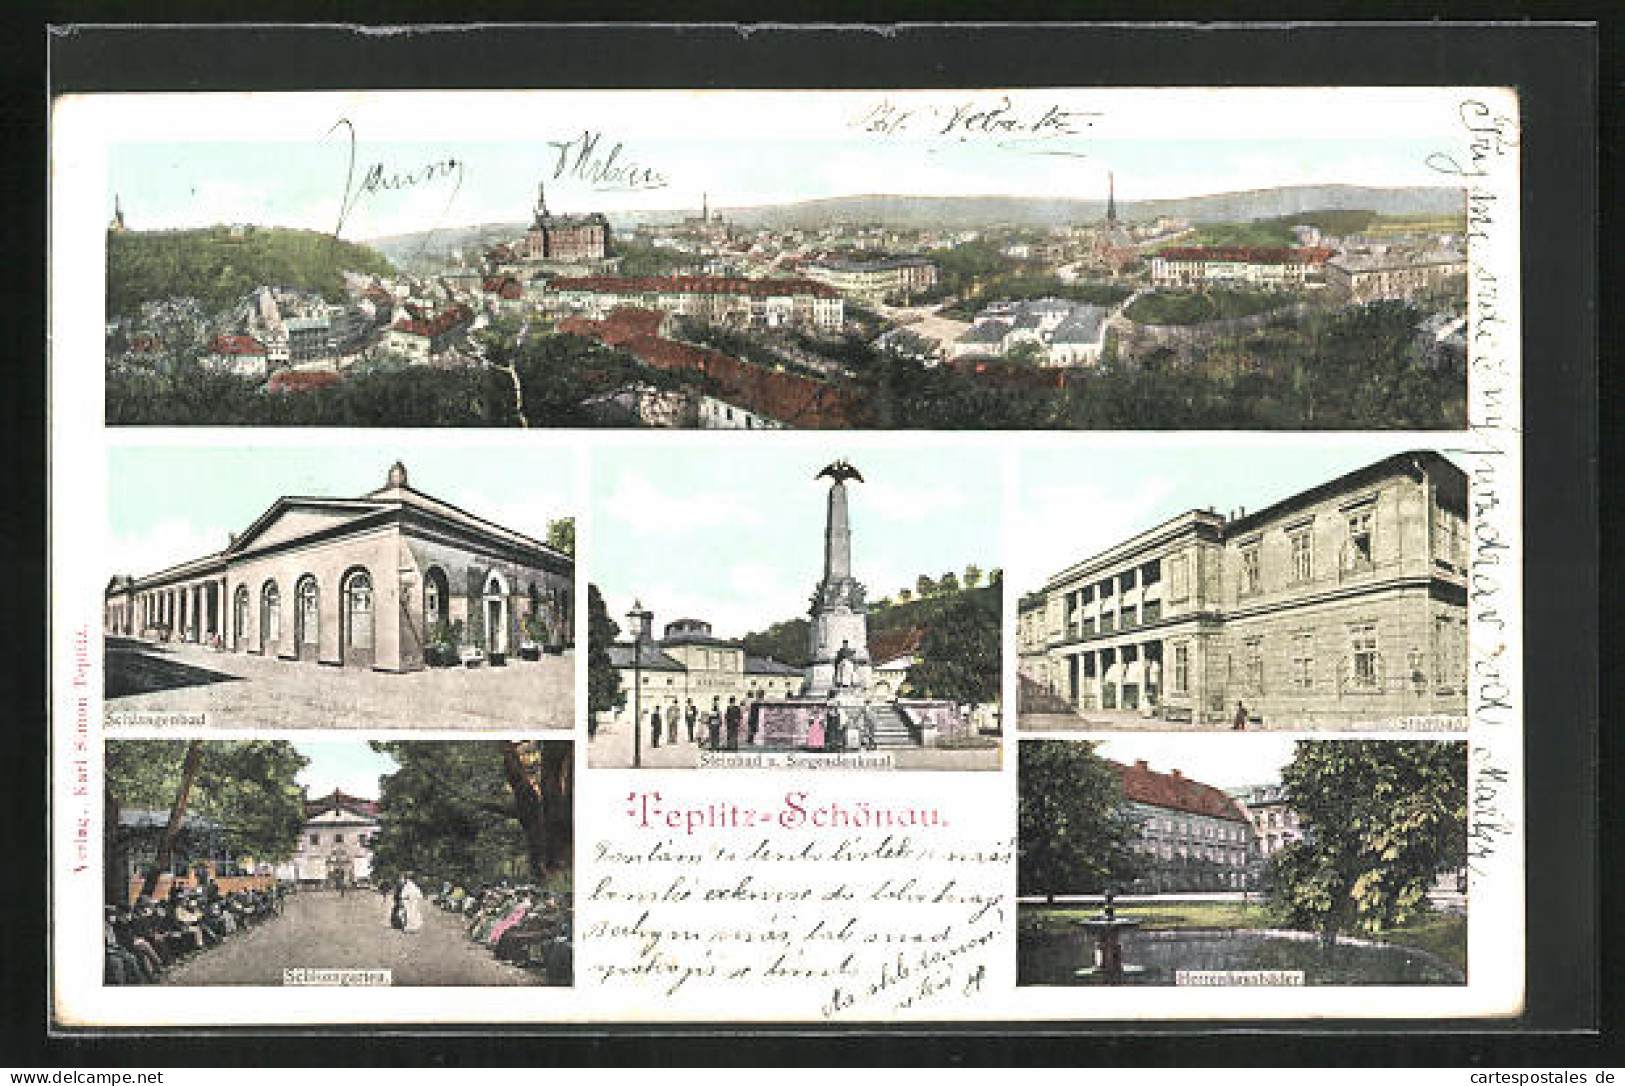 AK Teplitz Schönau / Teplice, Ortsansicht, Steinbad Und Siegesdenkmal, Schlangenbad, Schlossgarten, Stadtbad  - Tsjechië